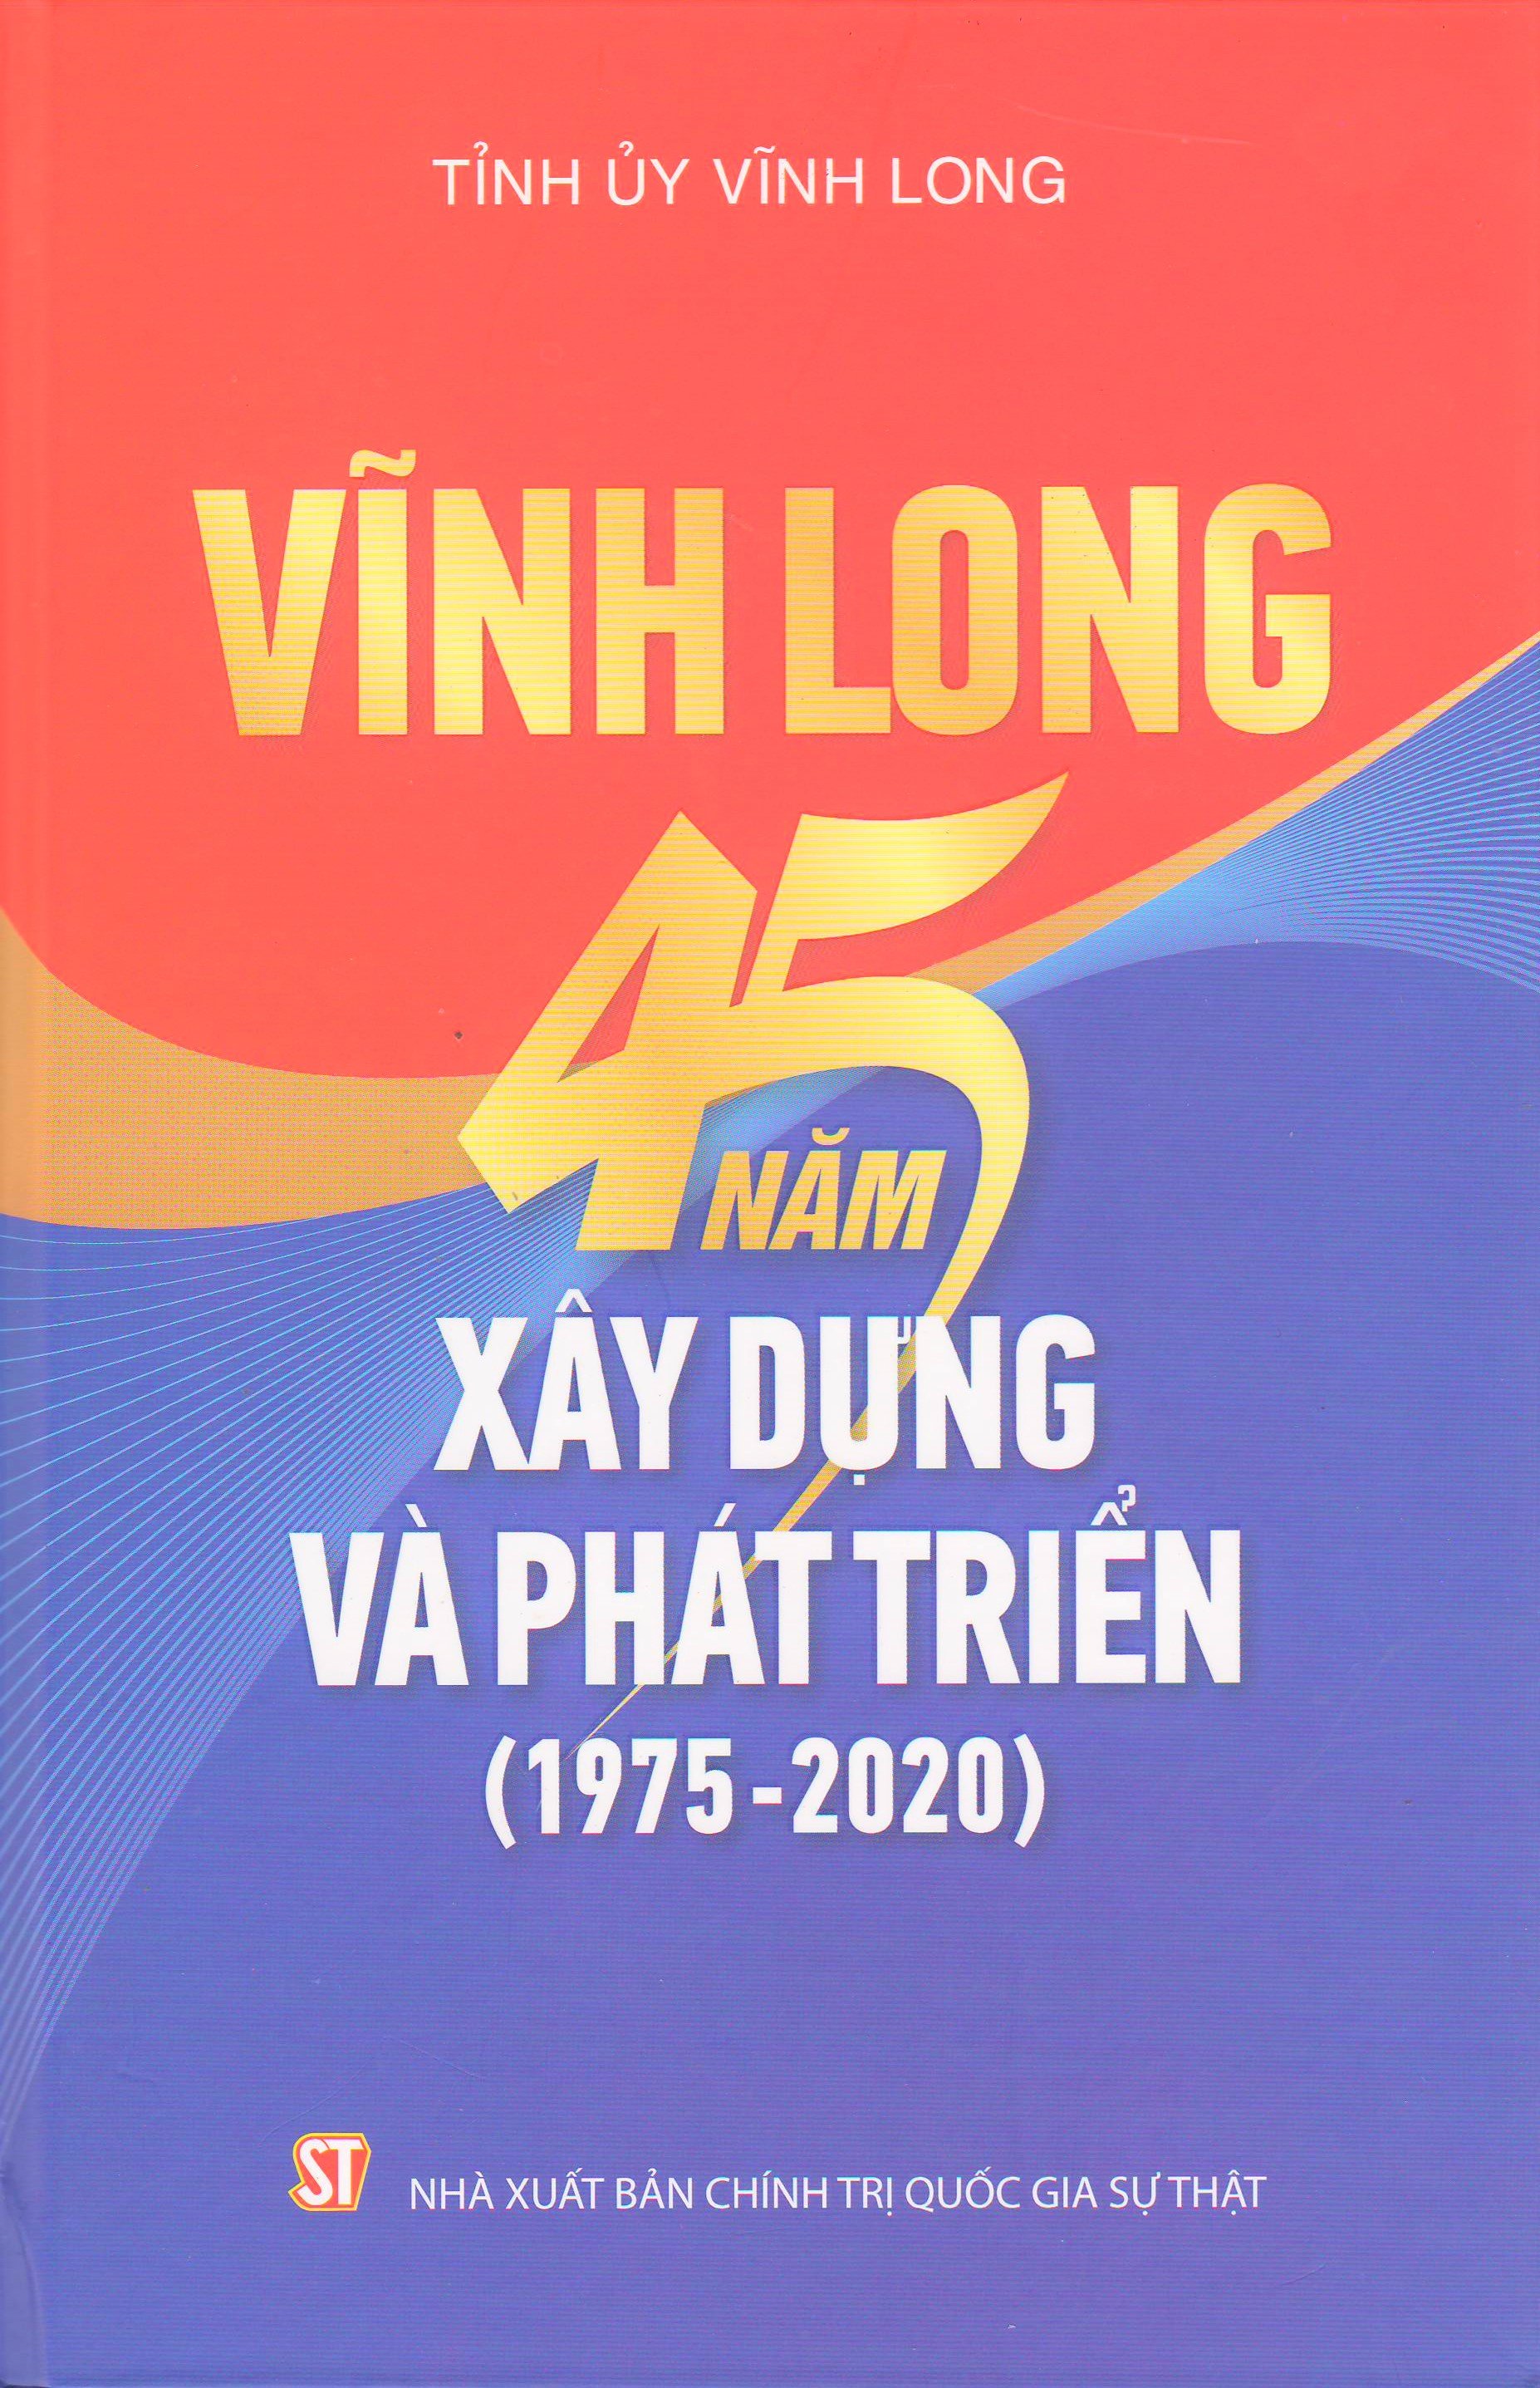 Vĩnh Long 45 năm xây dựng và phát triển (1975 - 2020)